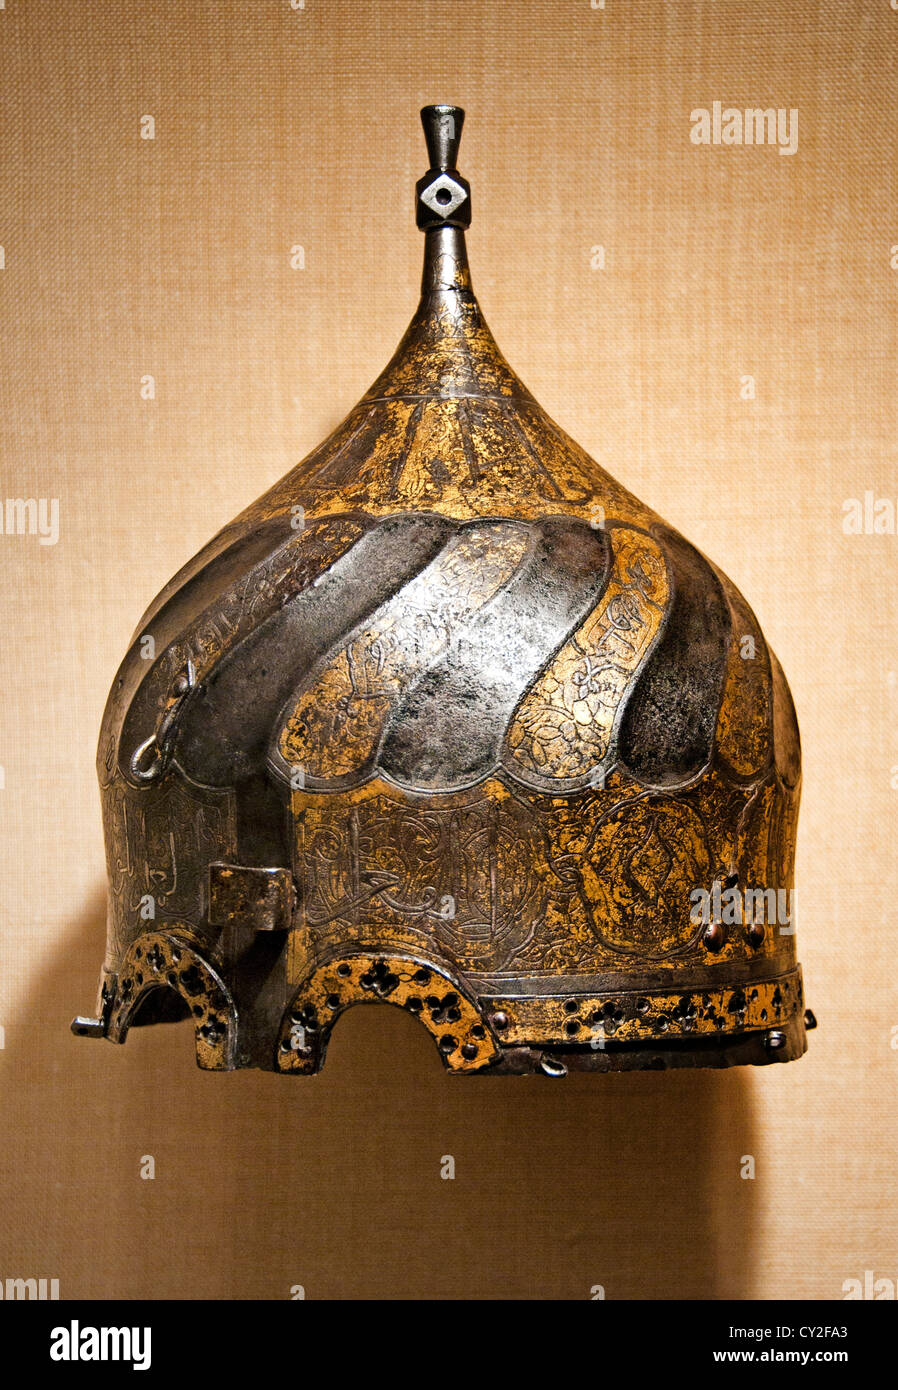 Turbante de finales del siglo XV los cascos de acero iraní damascened grabado con oro y plata Ak-Koyunlu irán turcomanos de Anatolia 23 cm Foto de stock